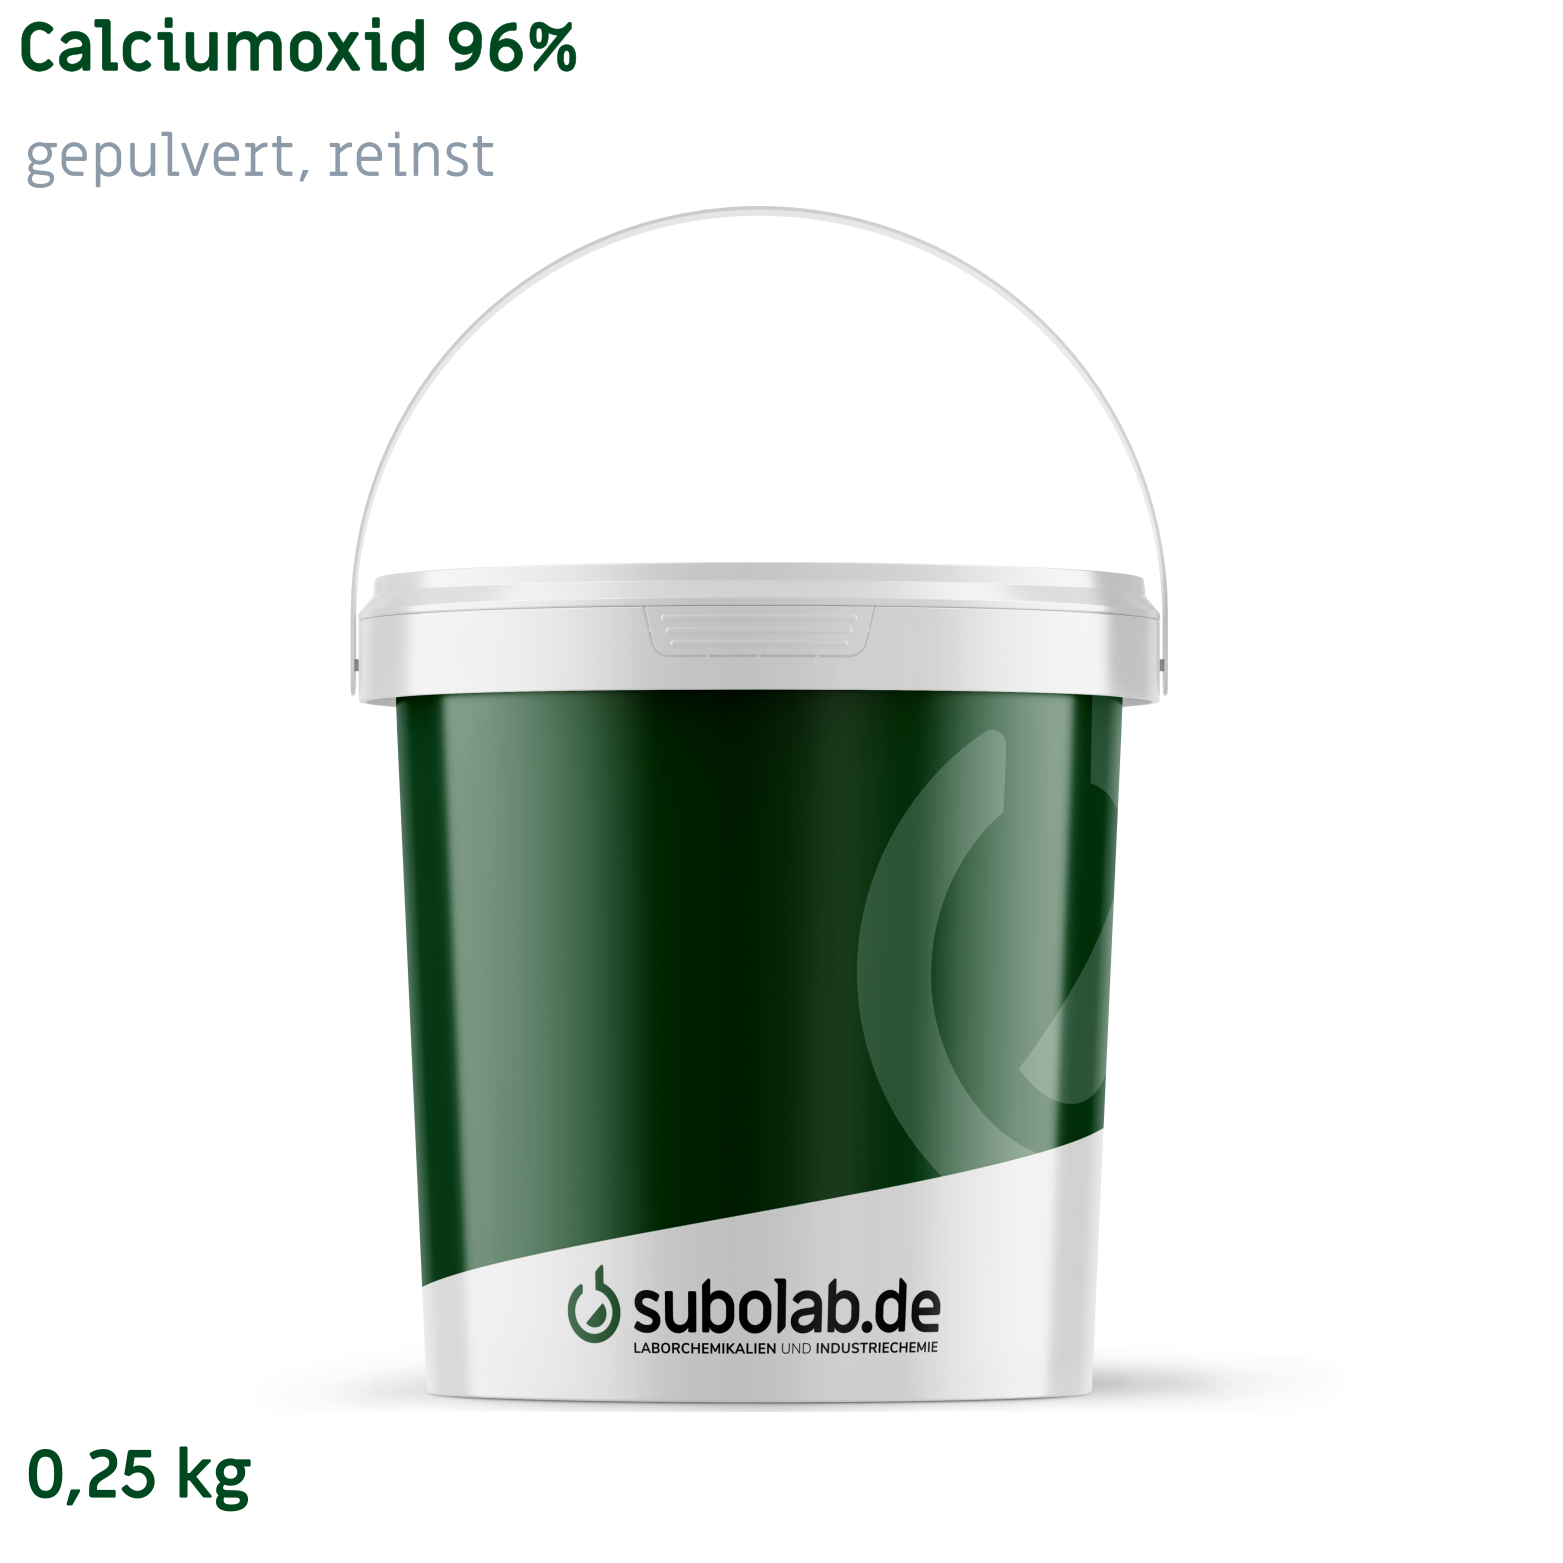 Bild von Calciumoxid 96% gepulvert, reinst (0,25 kg)